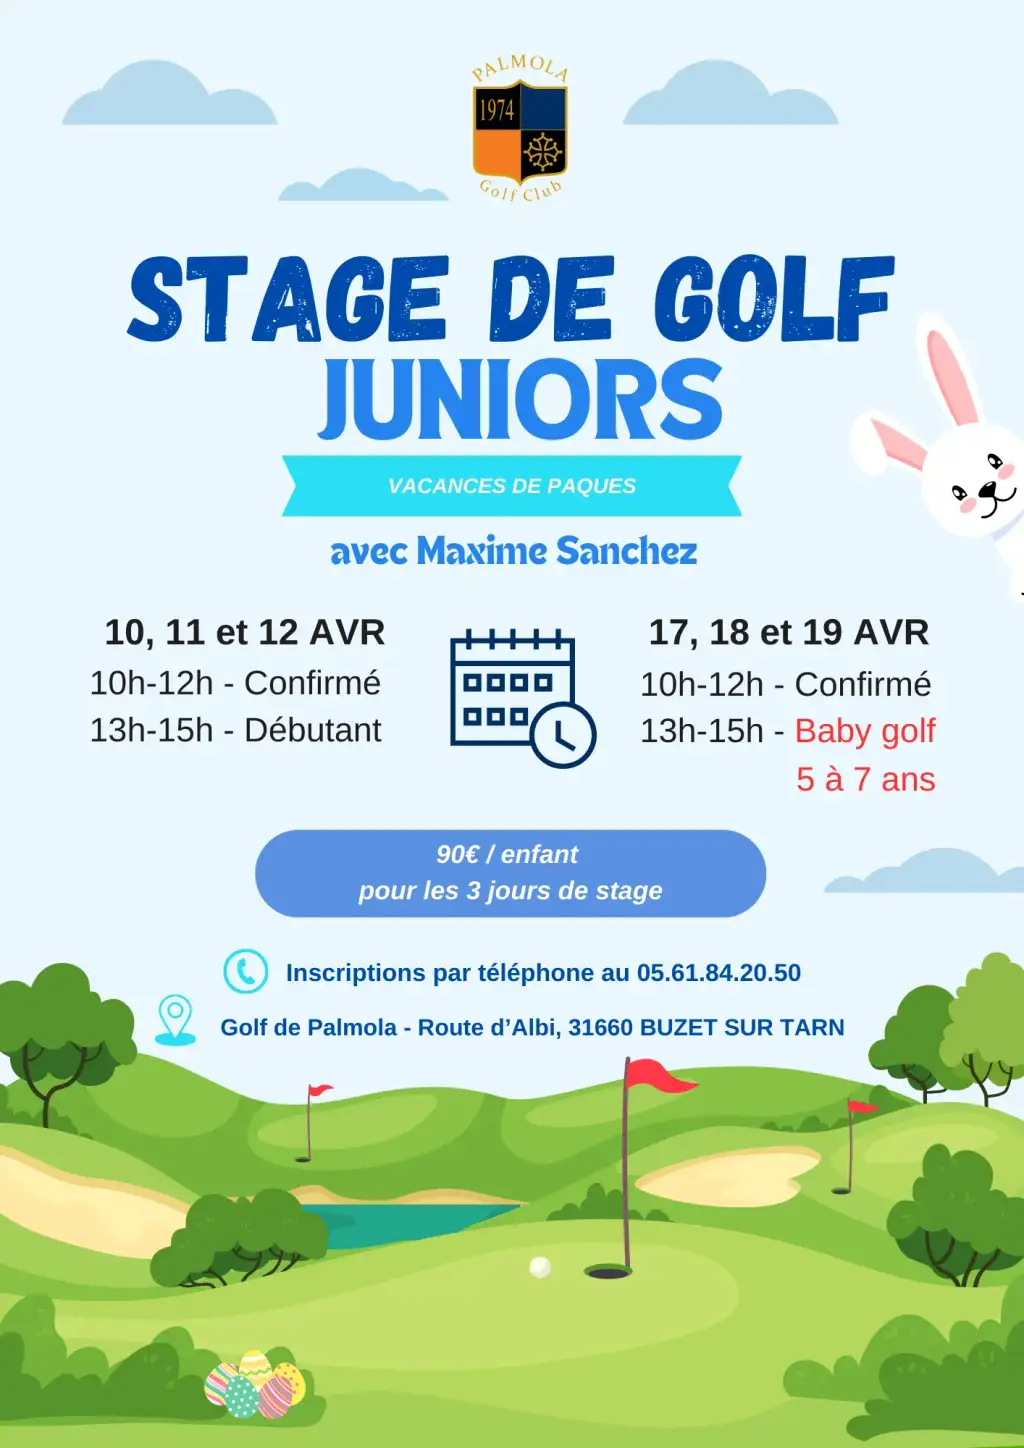 Stages de golf juniors avec Maxime